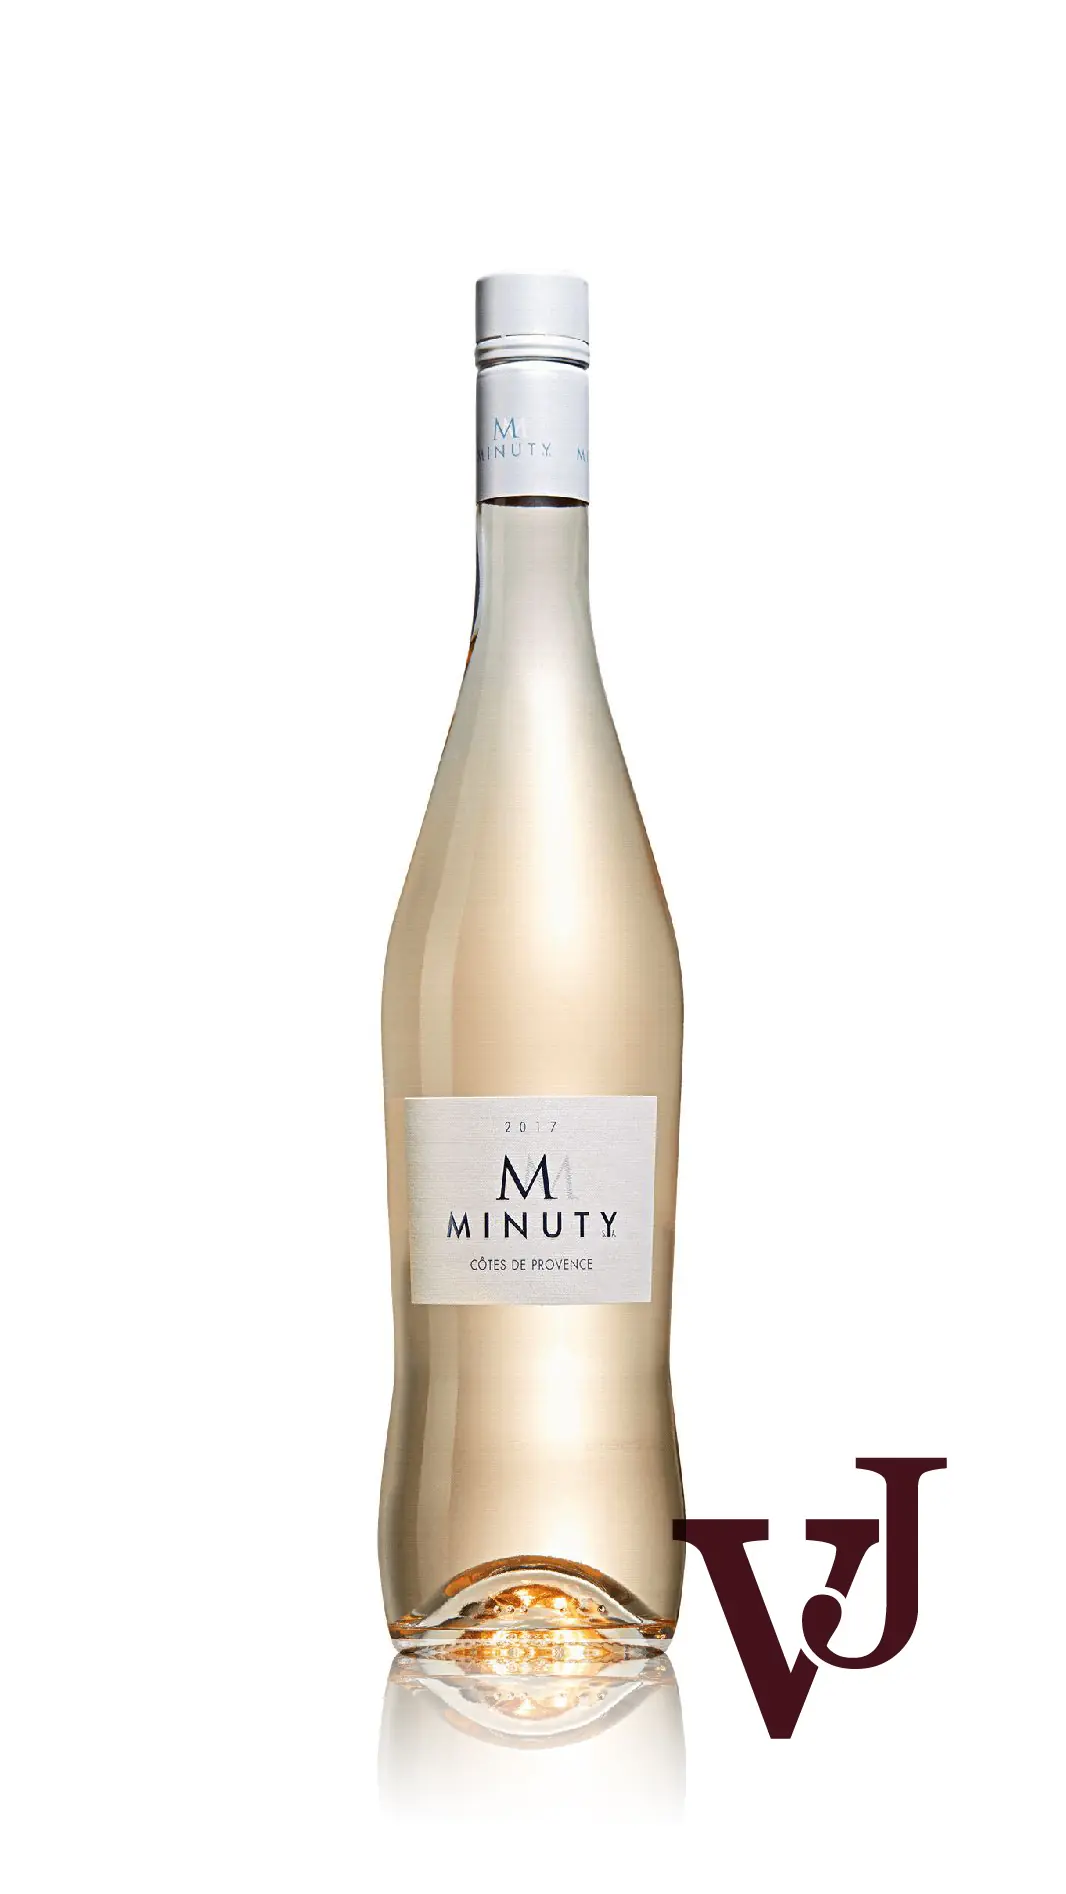 Rosé Vin - M de Minuty Rosé artikel nummer 259001 från producenten Château Minuty från området Frankrike - Vinjournalen.se